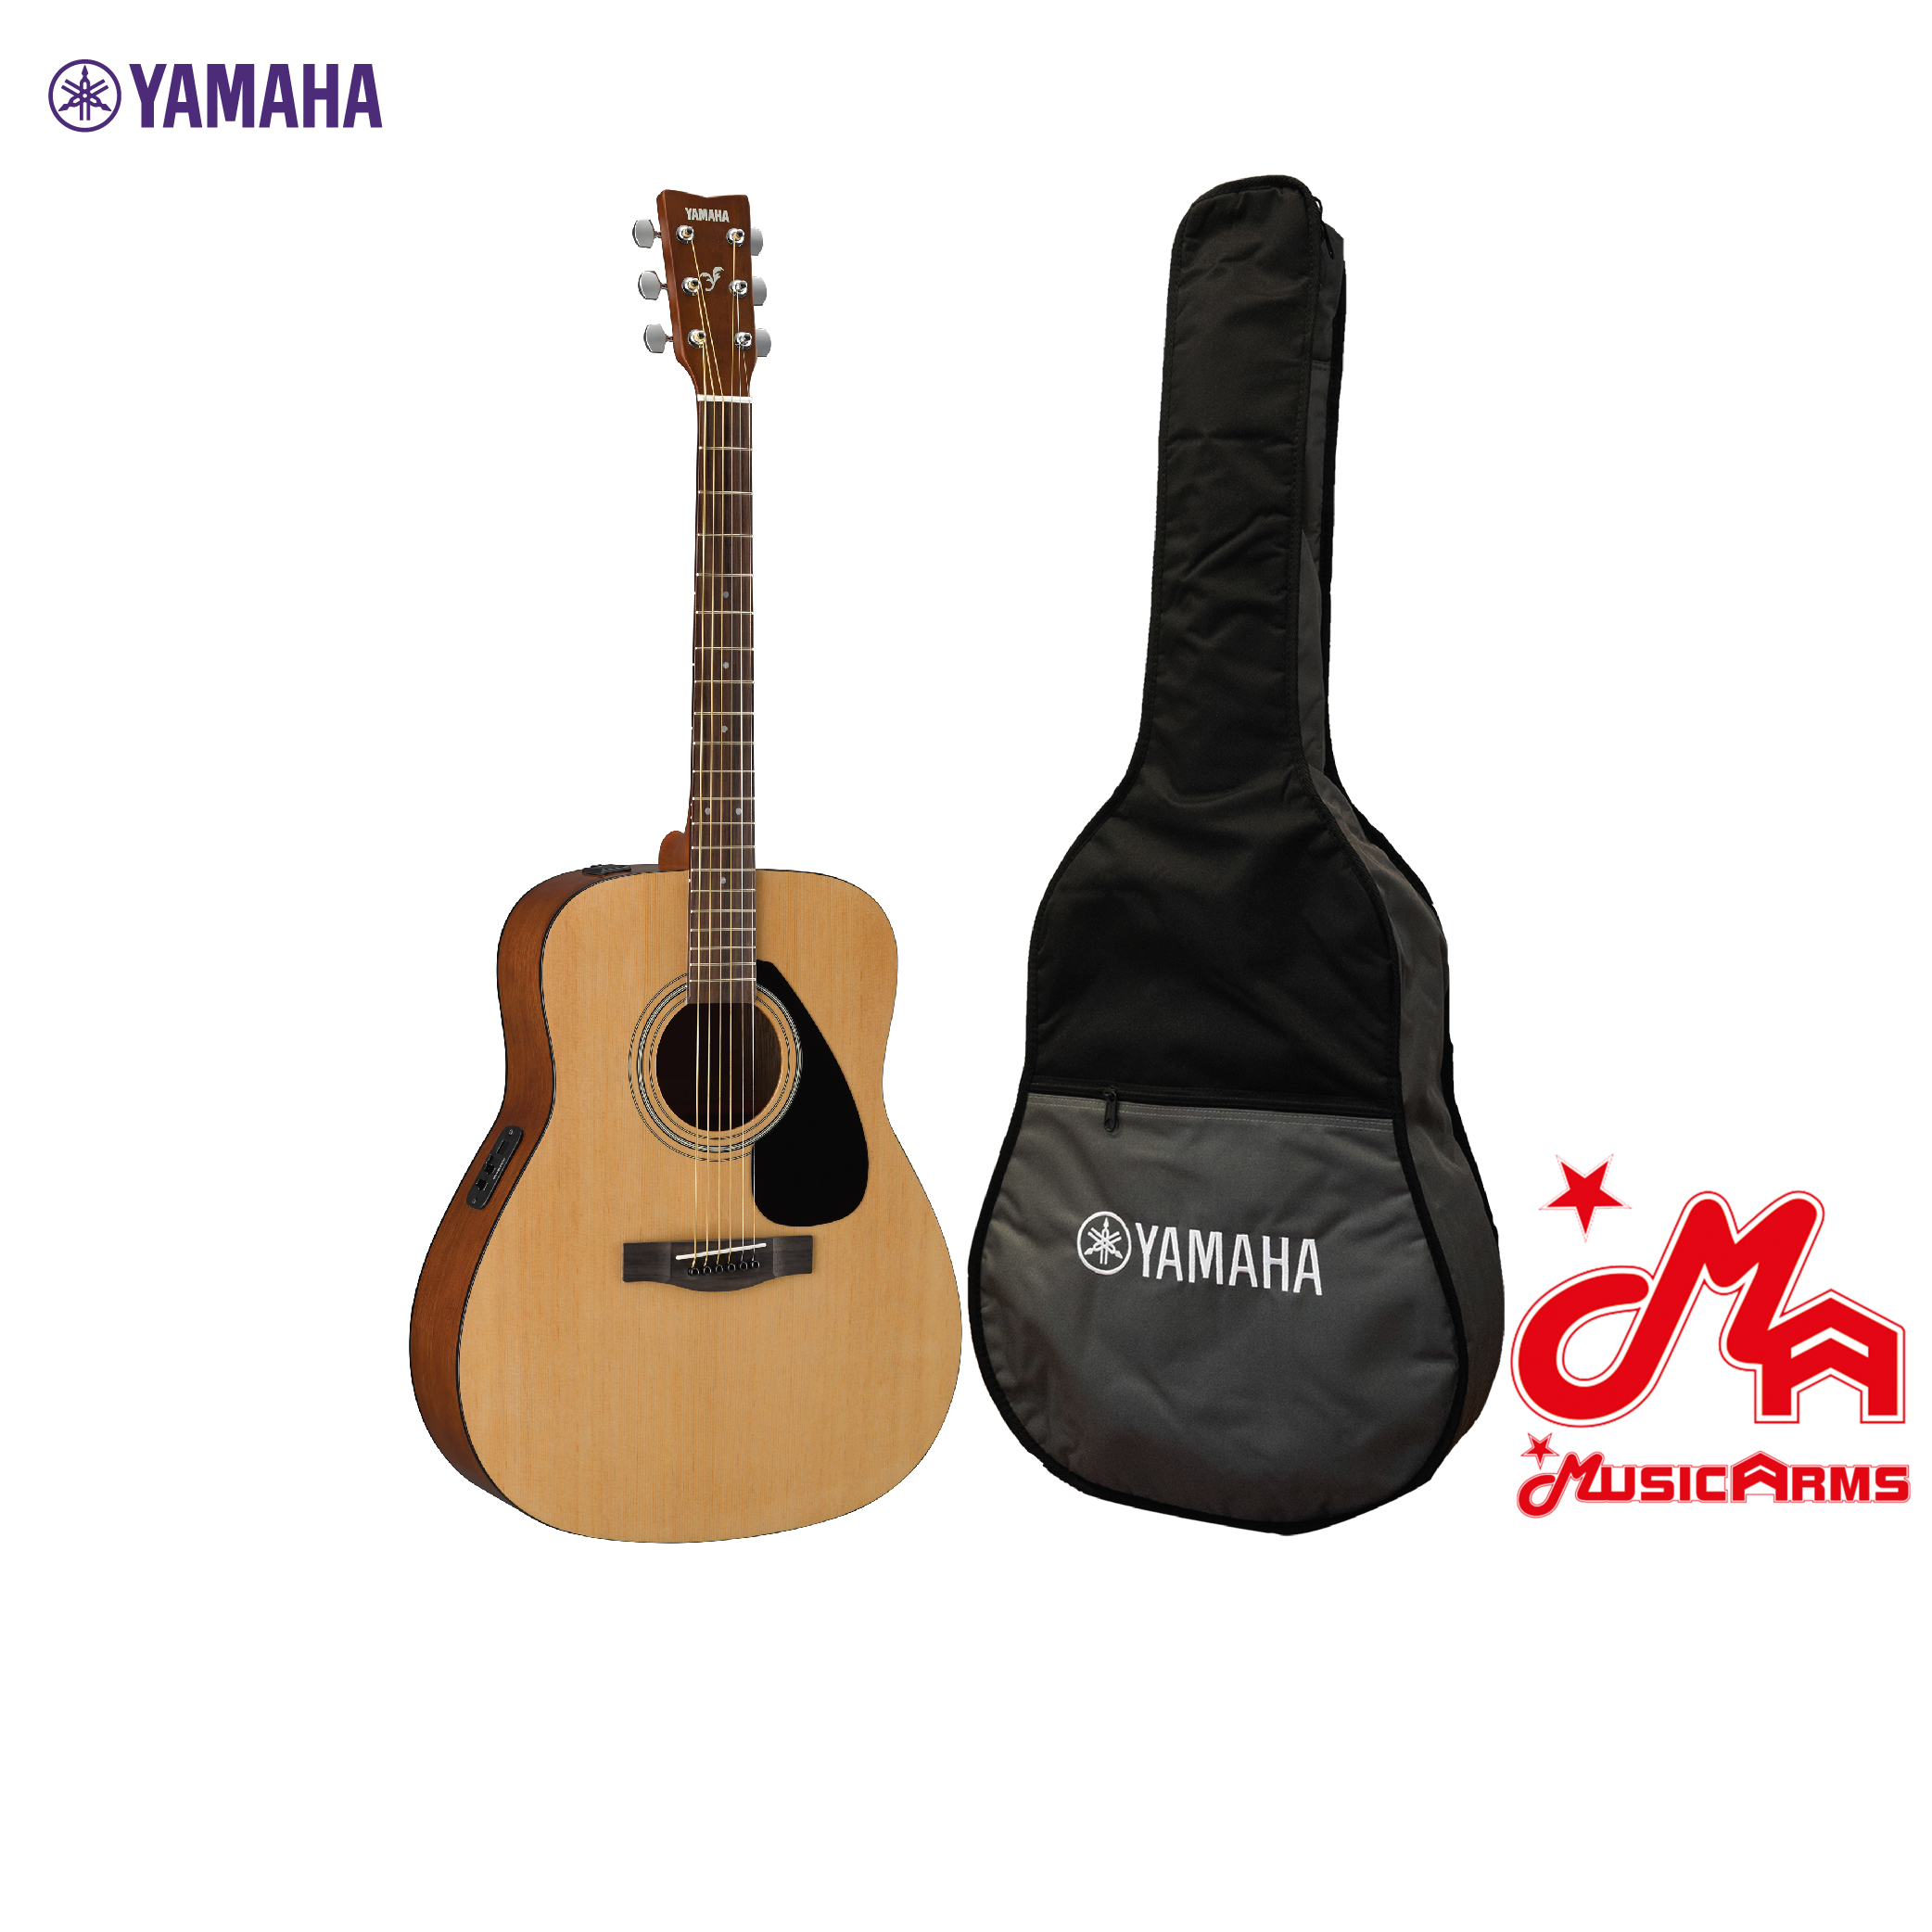 YAMAHA FX310AII Electric Acoustic Guitar กีตาร์โปร่งไฟฟ้ายามาฮ่า รุ่น FX310AII + Standard Guitar Bag กระเป๋ากีตาร์รุ่นสแตนดาร์ด